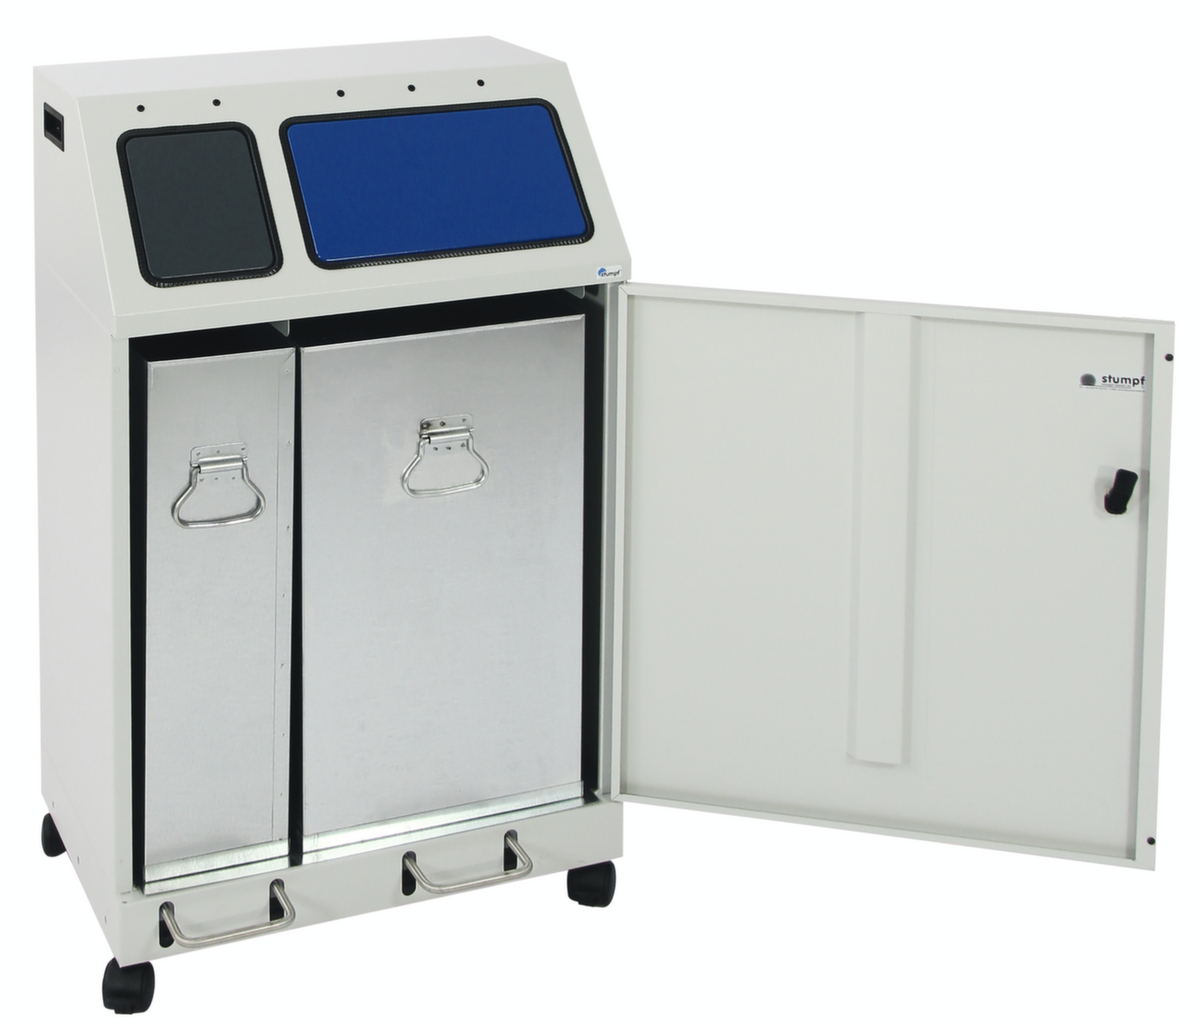 stumpf Station de collecte de matières recyclables compacte Duplex, capacité 1x30 l/1x60 l  ZOOM